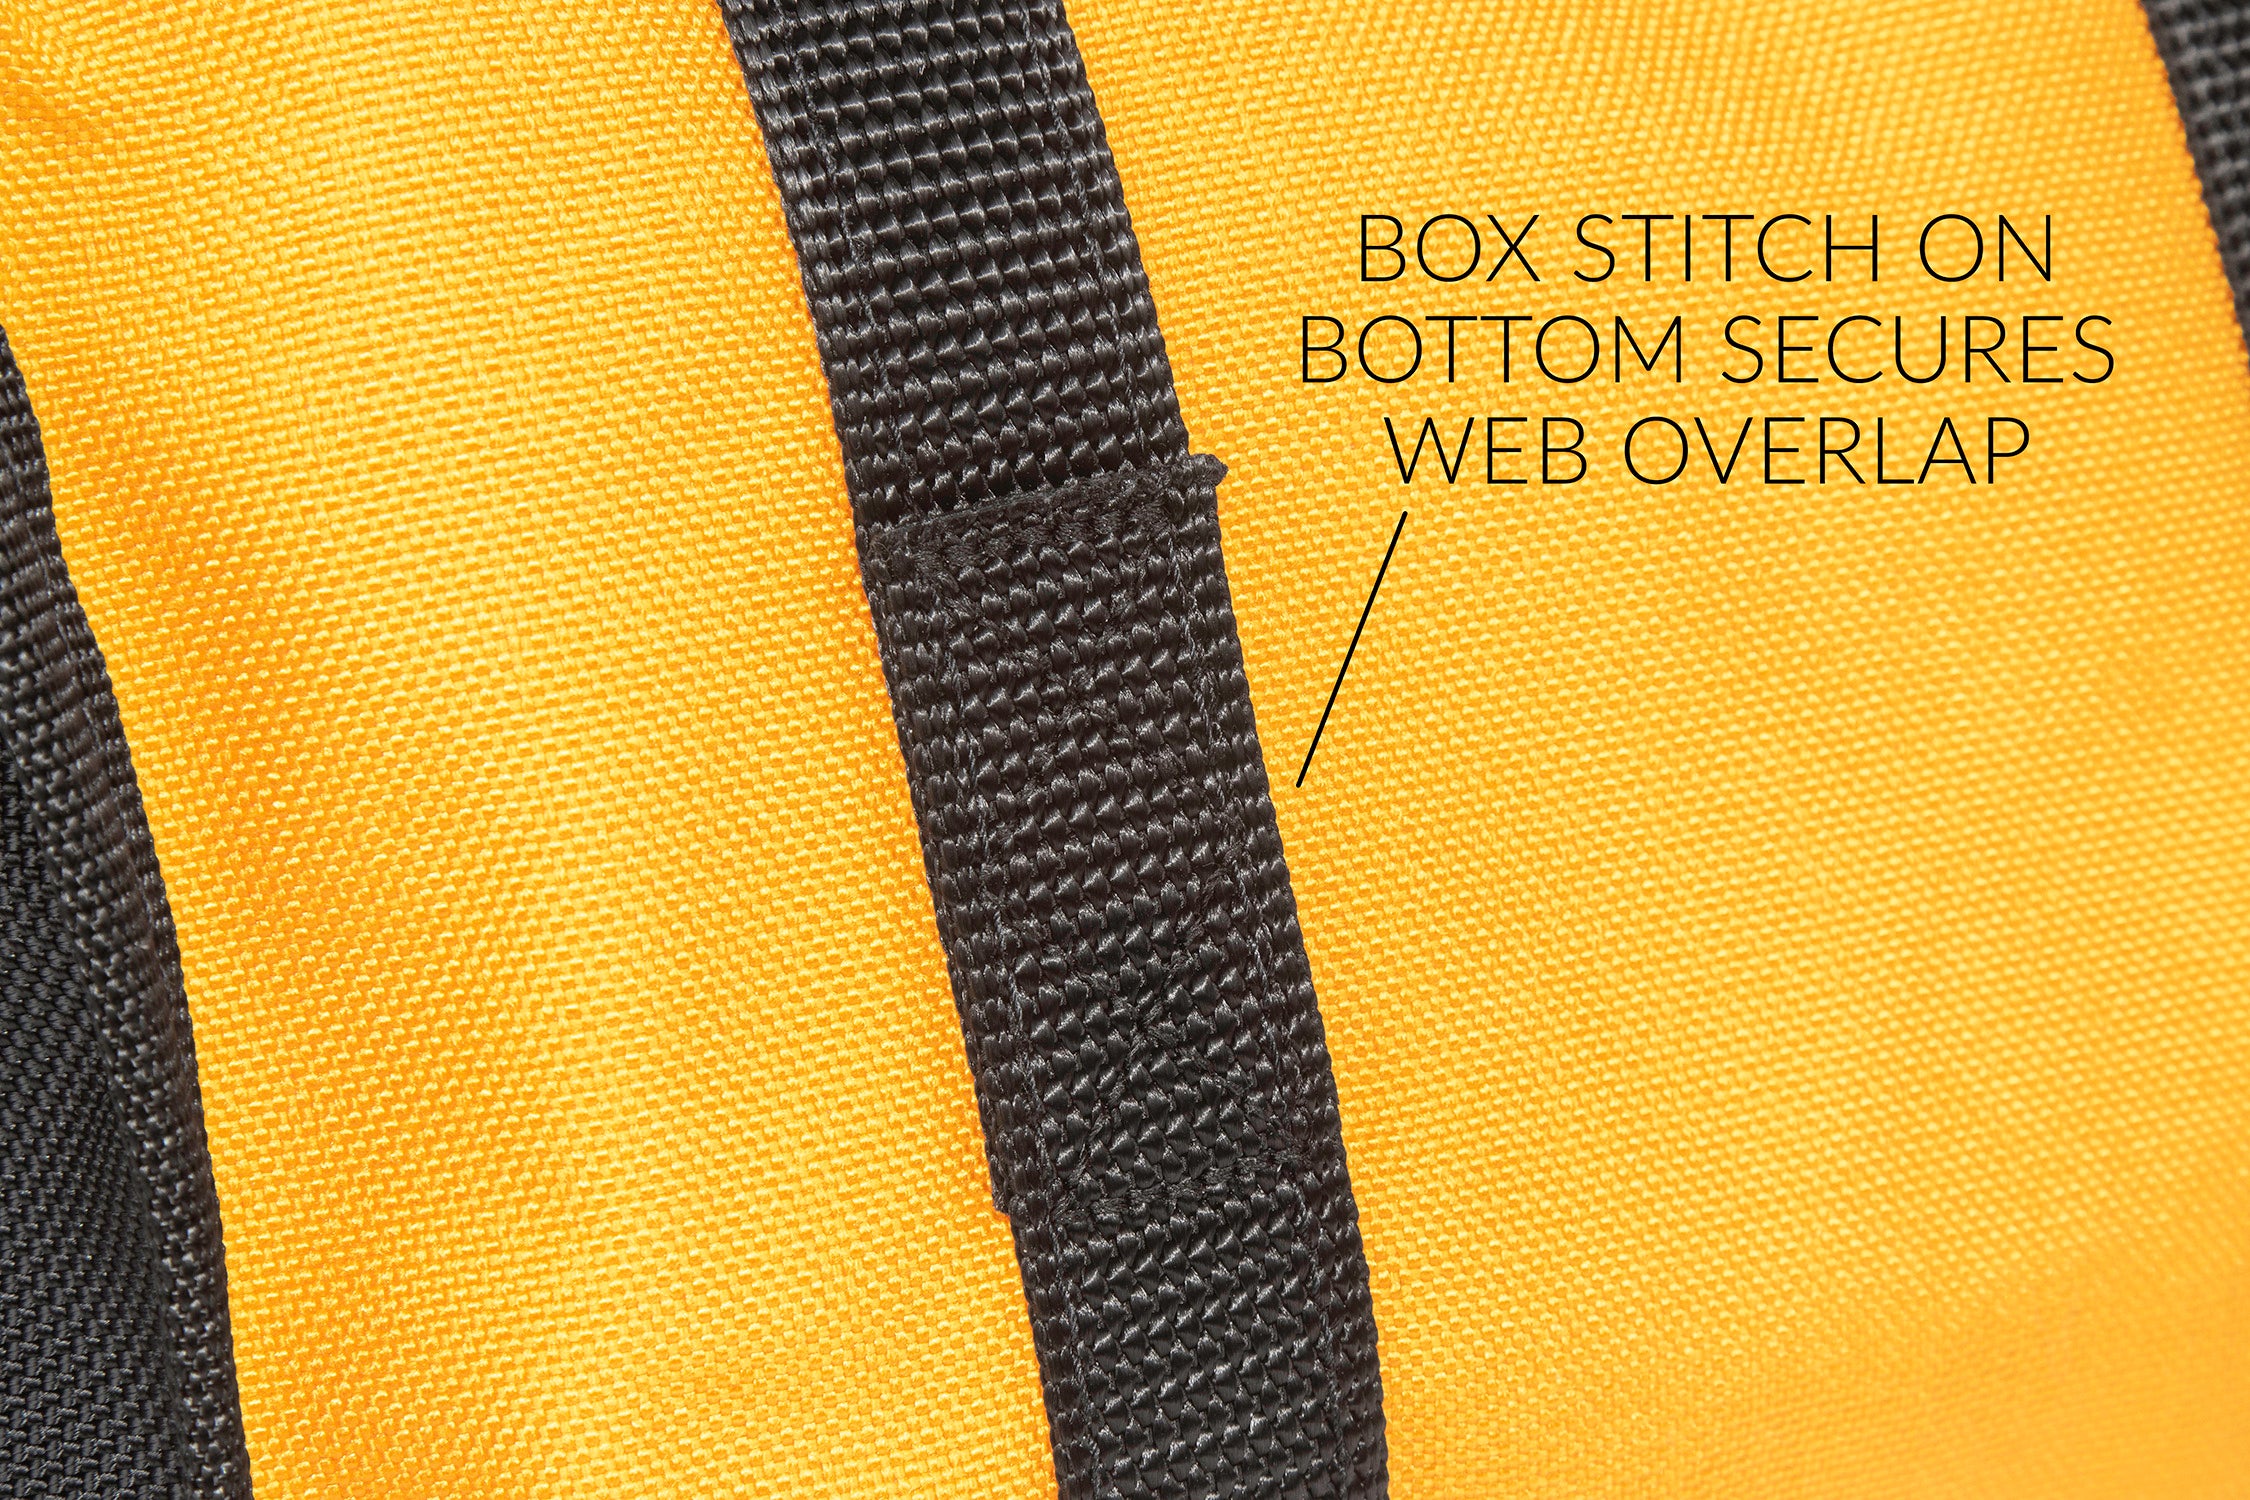 Box stitch on bottom secures web overlap.